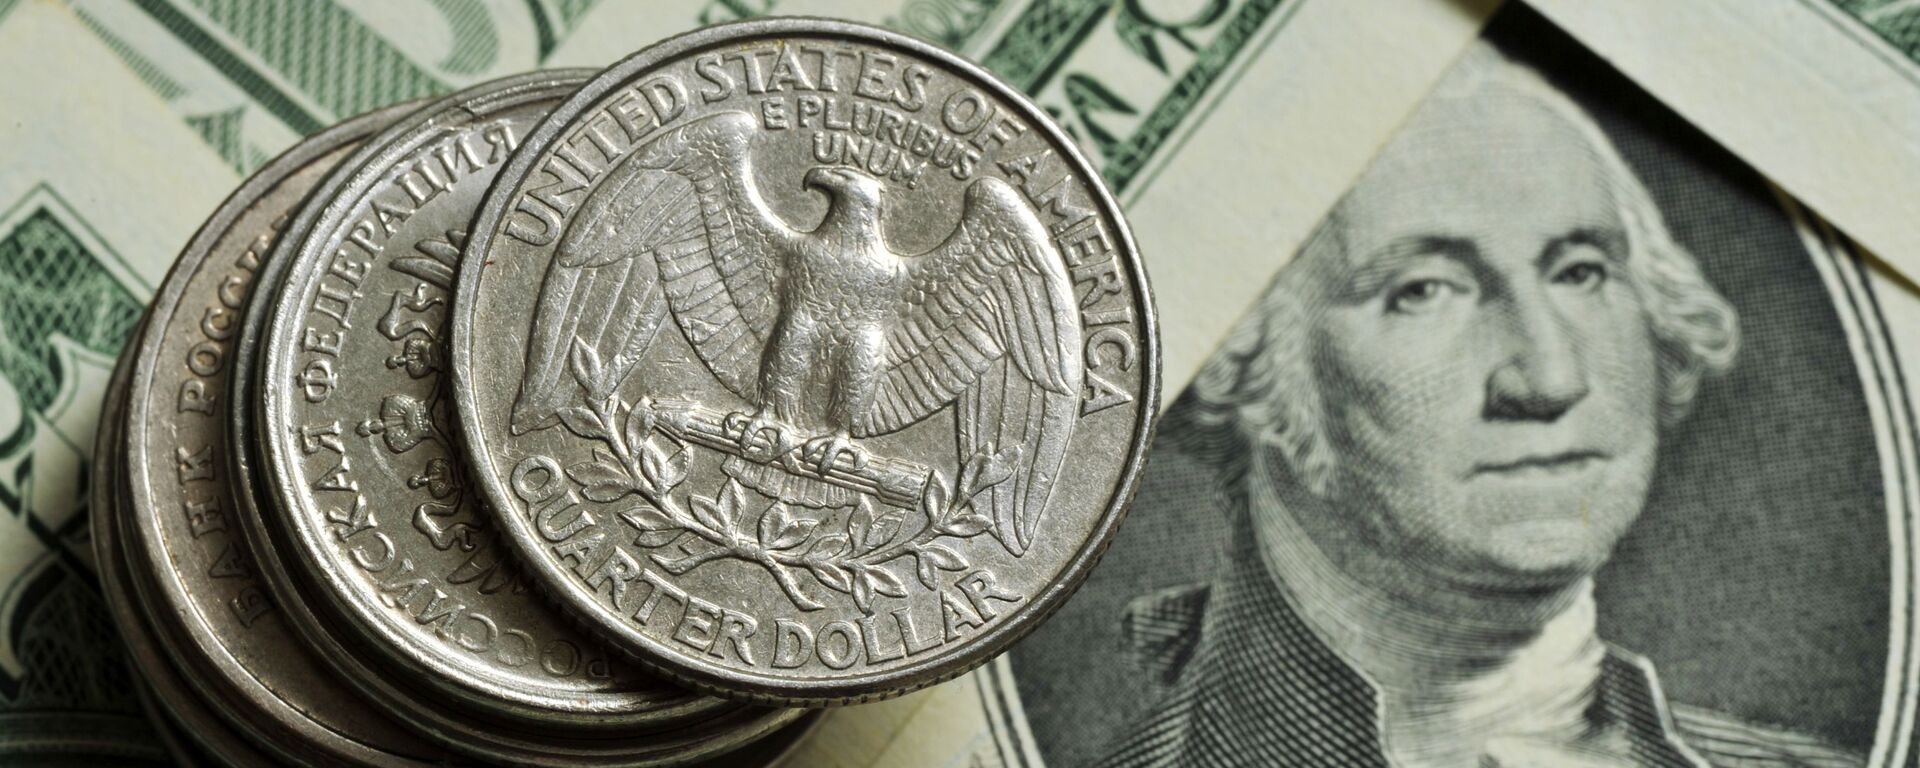 Монеты различного номинала Монетного двора США на фоне банкноты номиналом 1 доллар США - Sputnik Армения, 1920, 13.10.2021